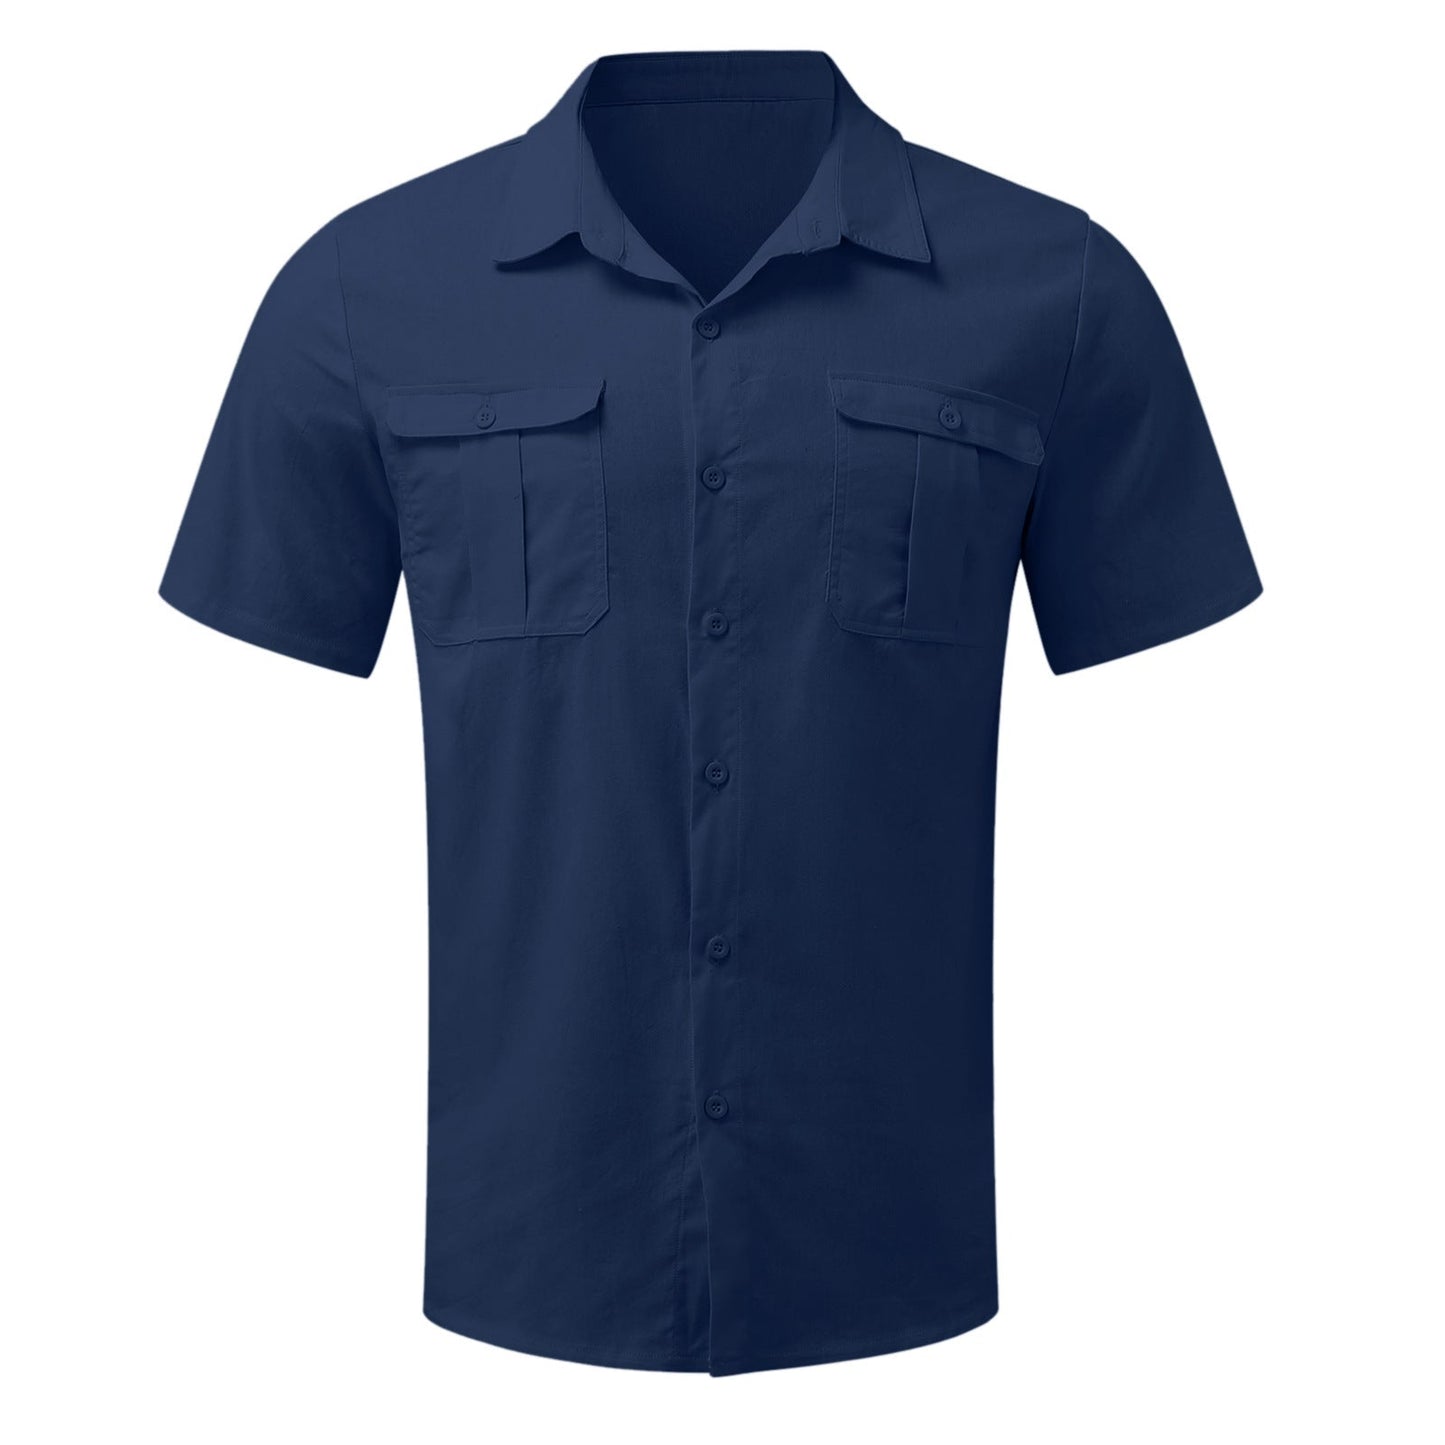 Herren-Kurzarmhemden aus Baumwollleinen mit zwei Taschen – Kaufen Sie 2 versandkostenfrei